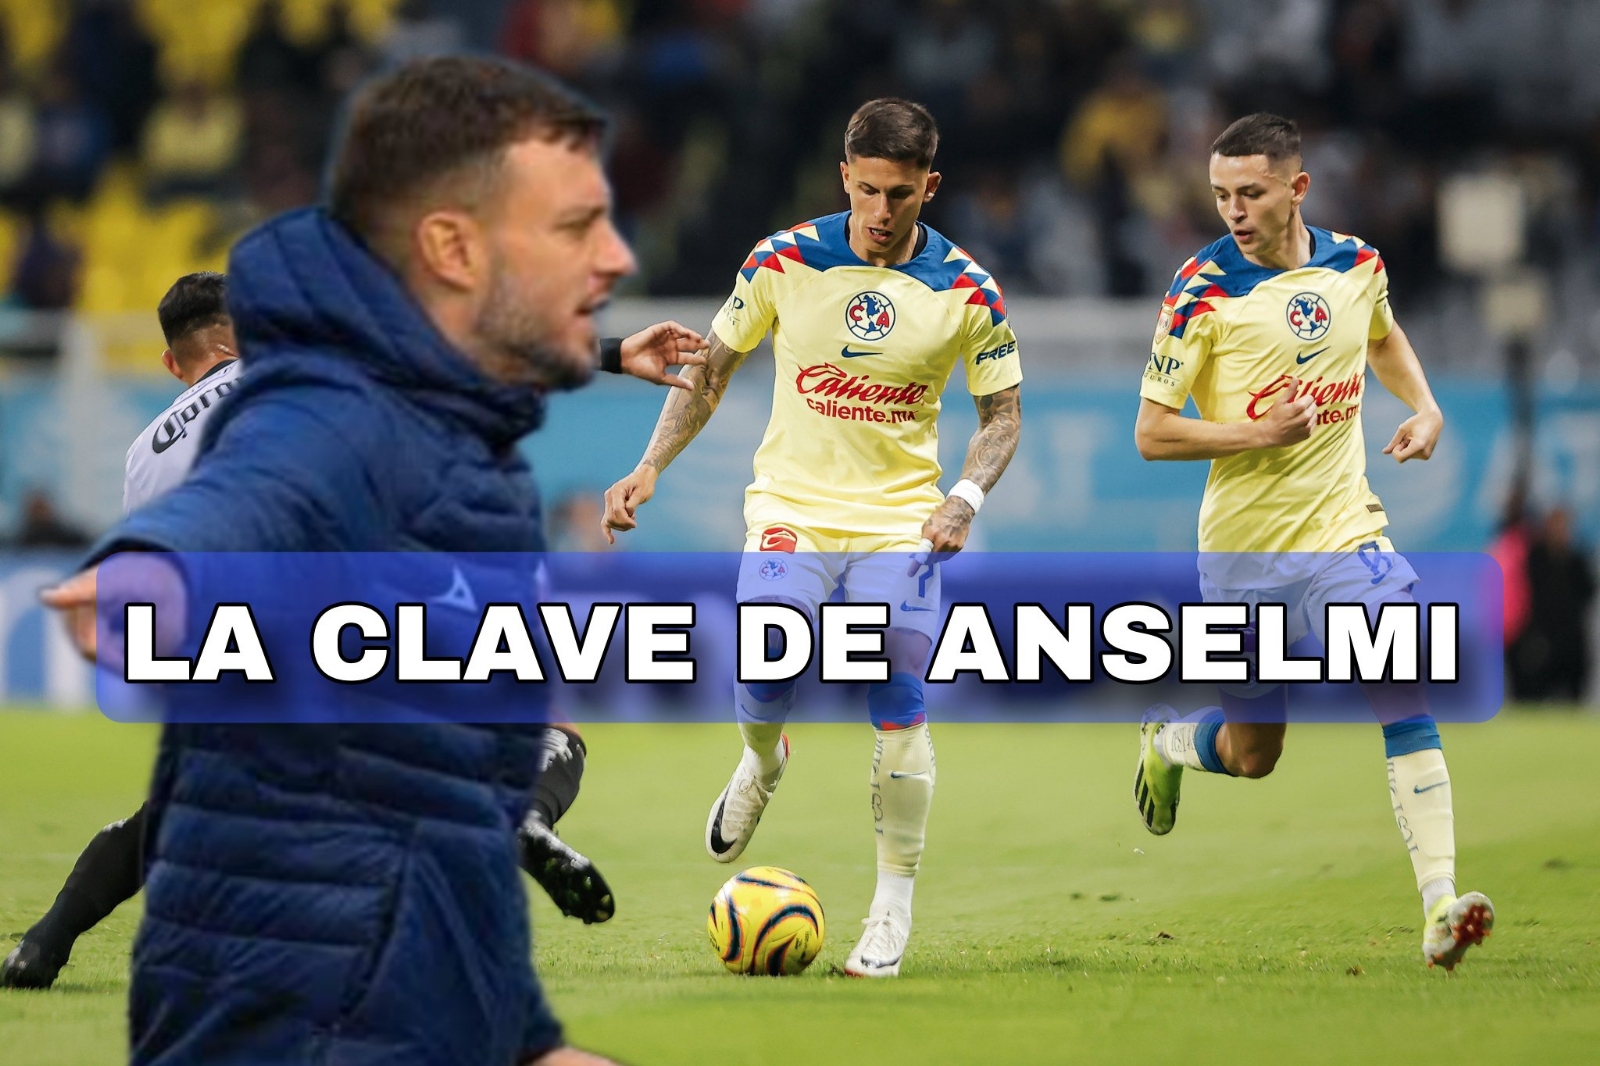 El jugador de Cruz Azul que SERÁ CLAVE si quieren la victoria contra el Club América